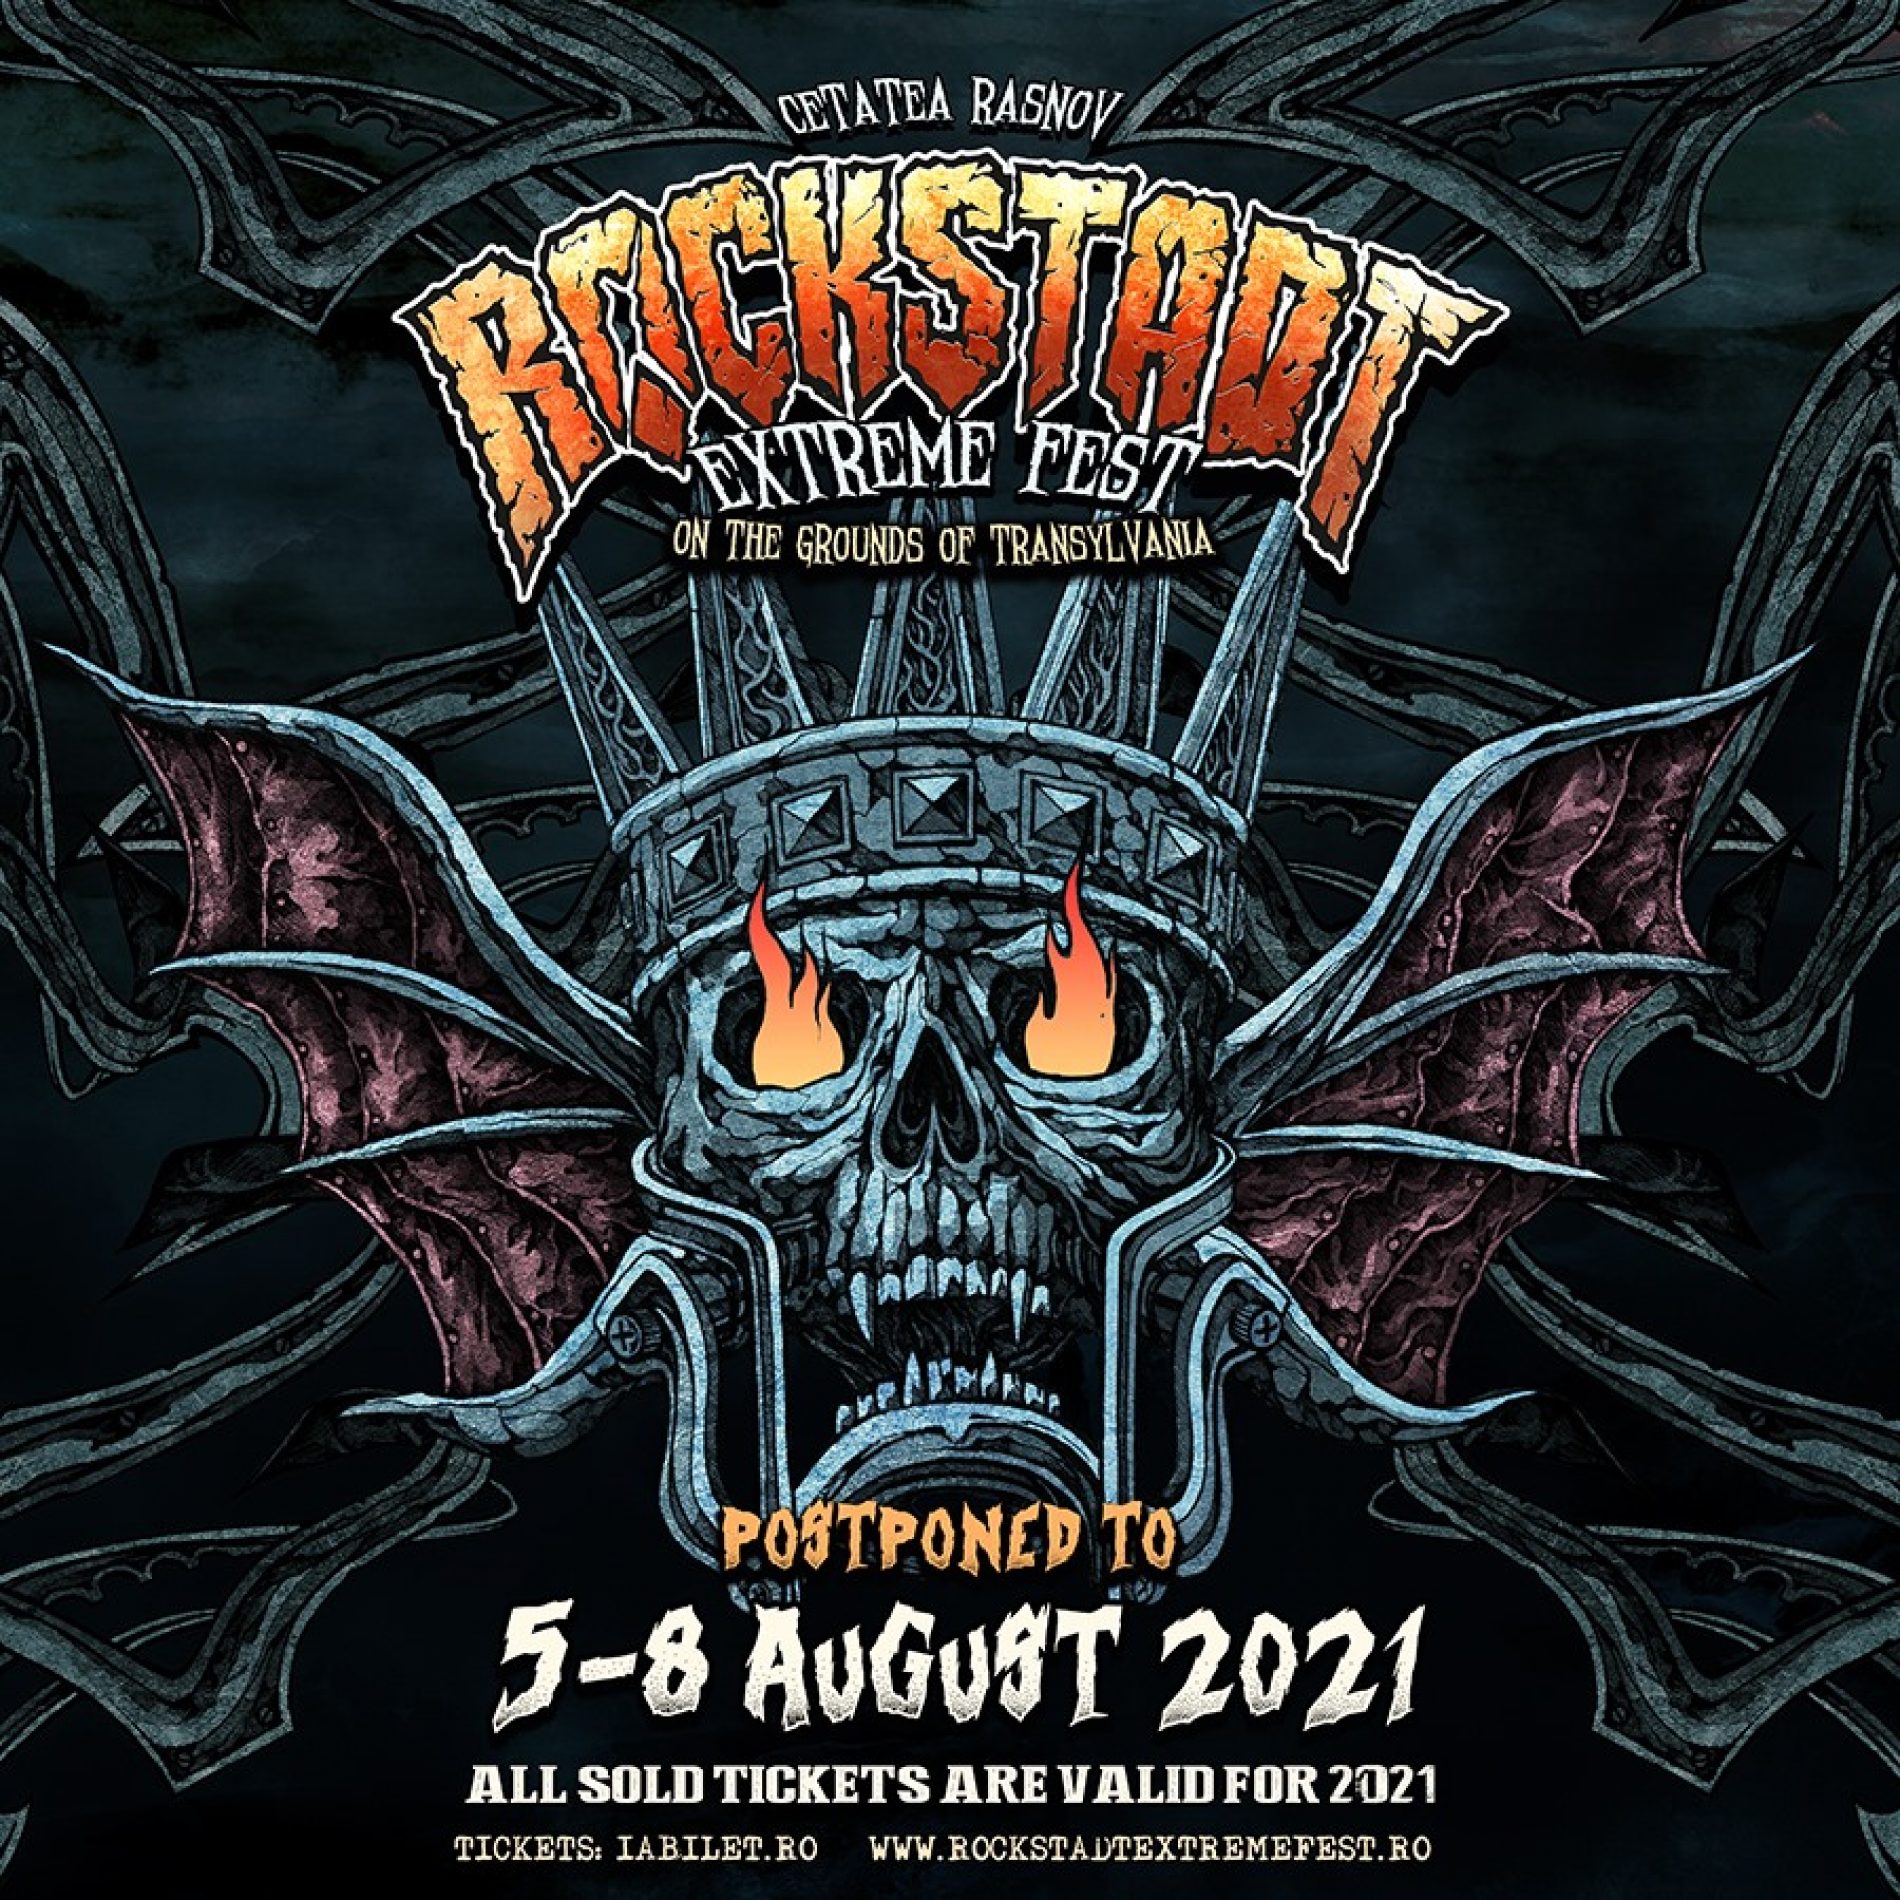 Rockstadt Extreme Fest se reprogramează în 2021